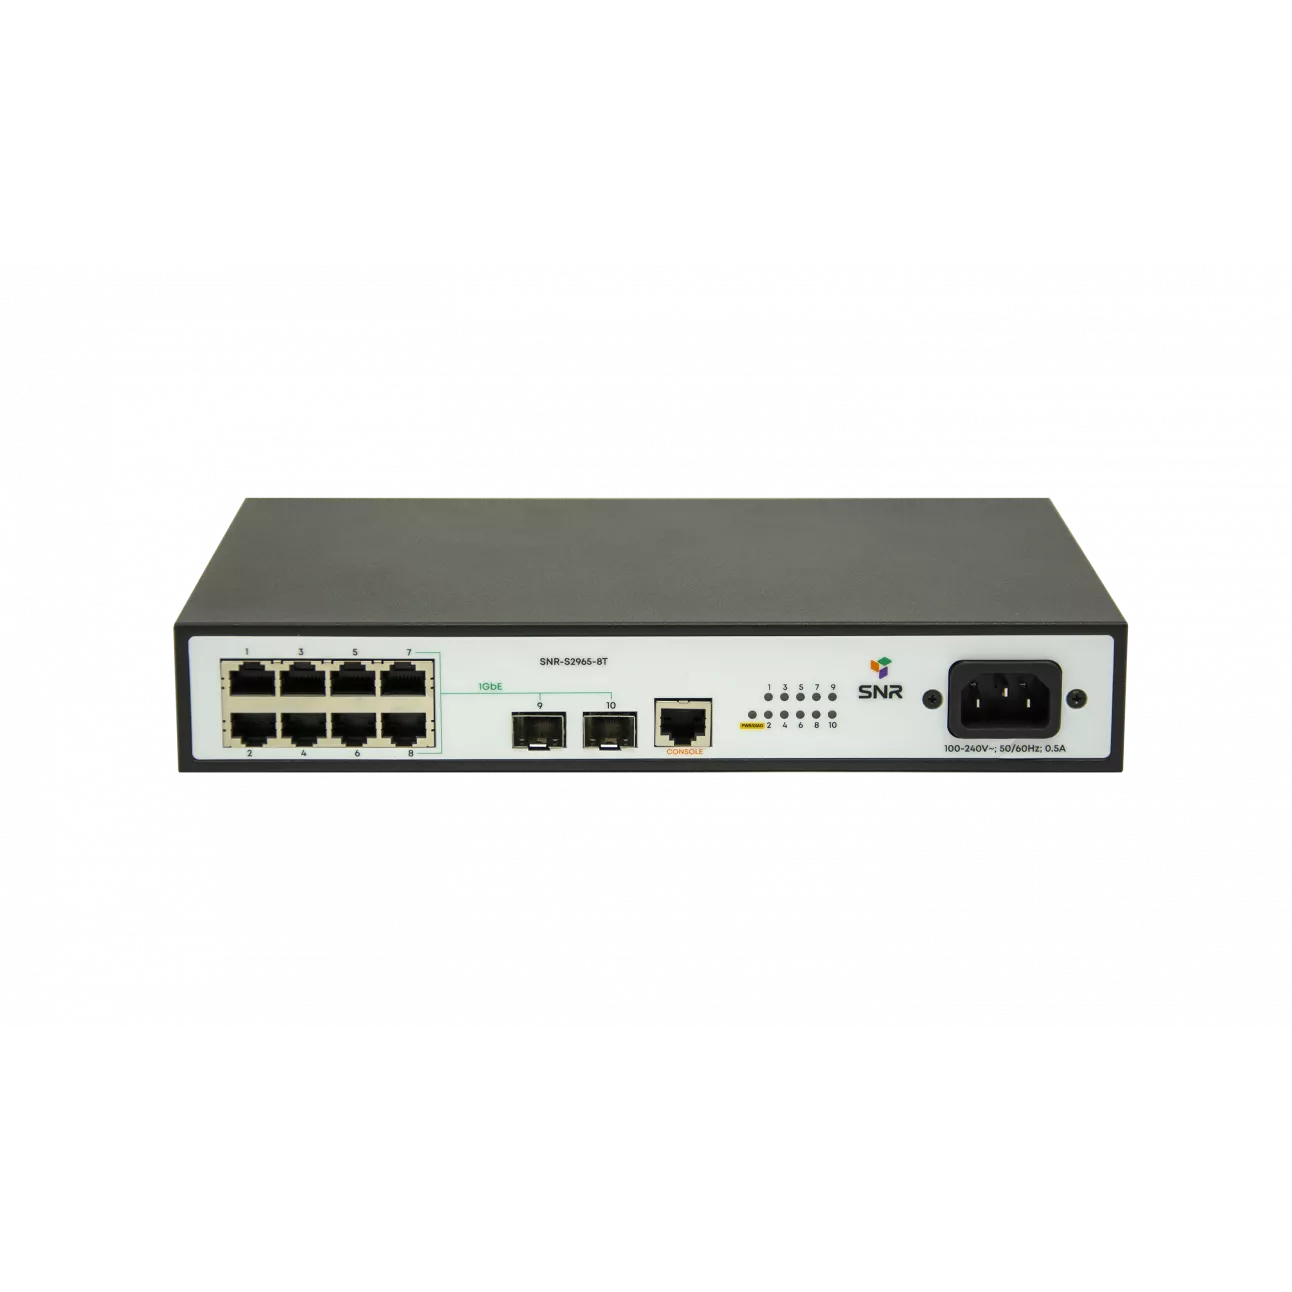 Коммутатор SNR S2965-8T, управляемый, кол-во портов: 8x100 Мбит/с, кол-во SFP/uplink: SFP 2x1 Гбит/с, установка в стойку (SNR-S2965-8T)